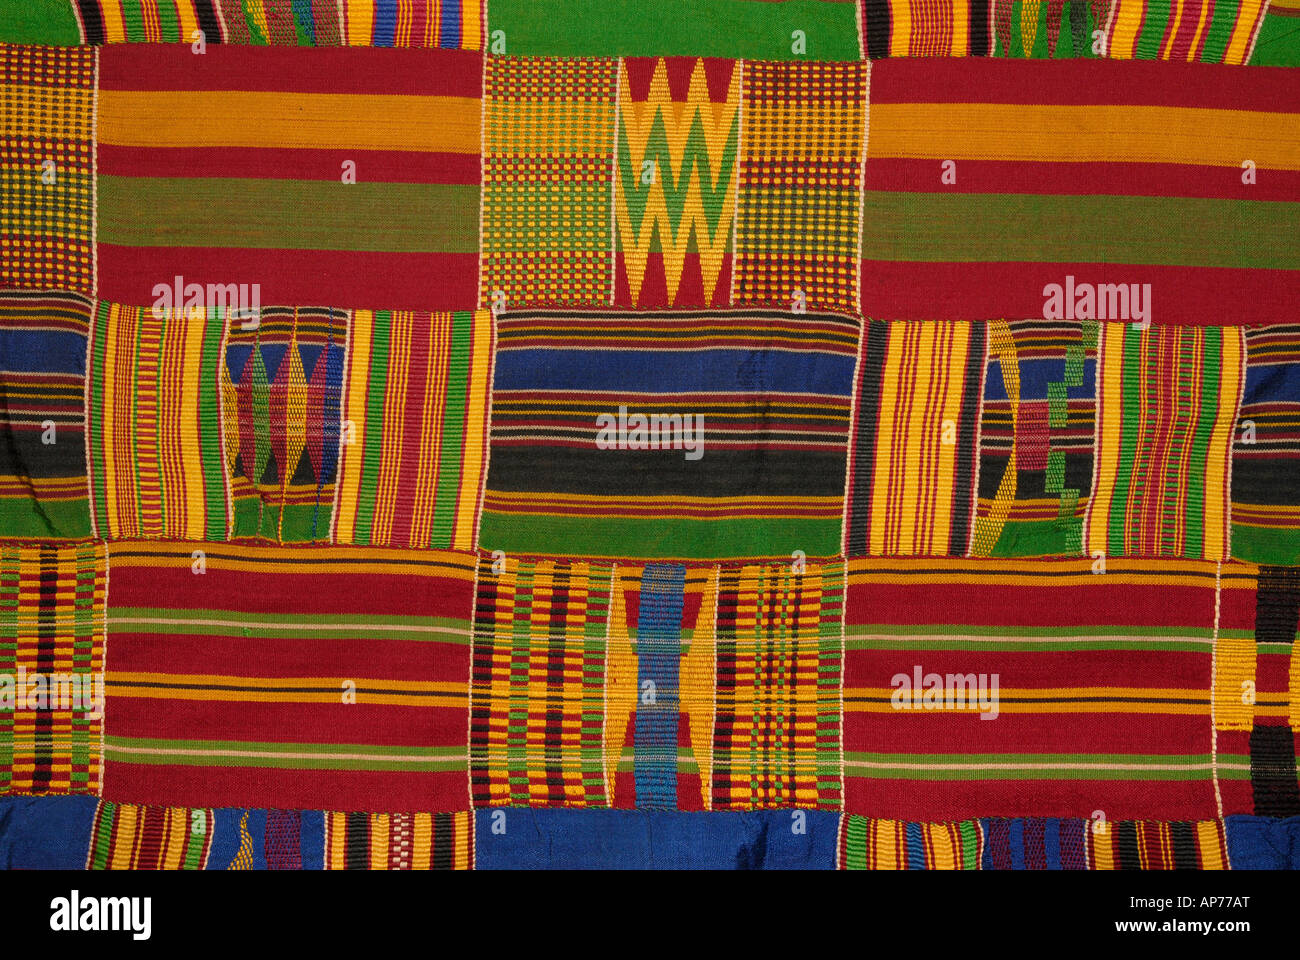 Détail d'une bande textile coton tissé à partir de l'Ewe au sud-est du Ghana Banque D'Images